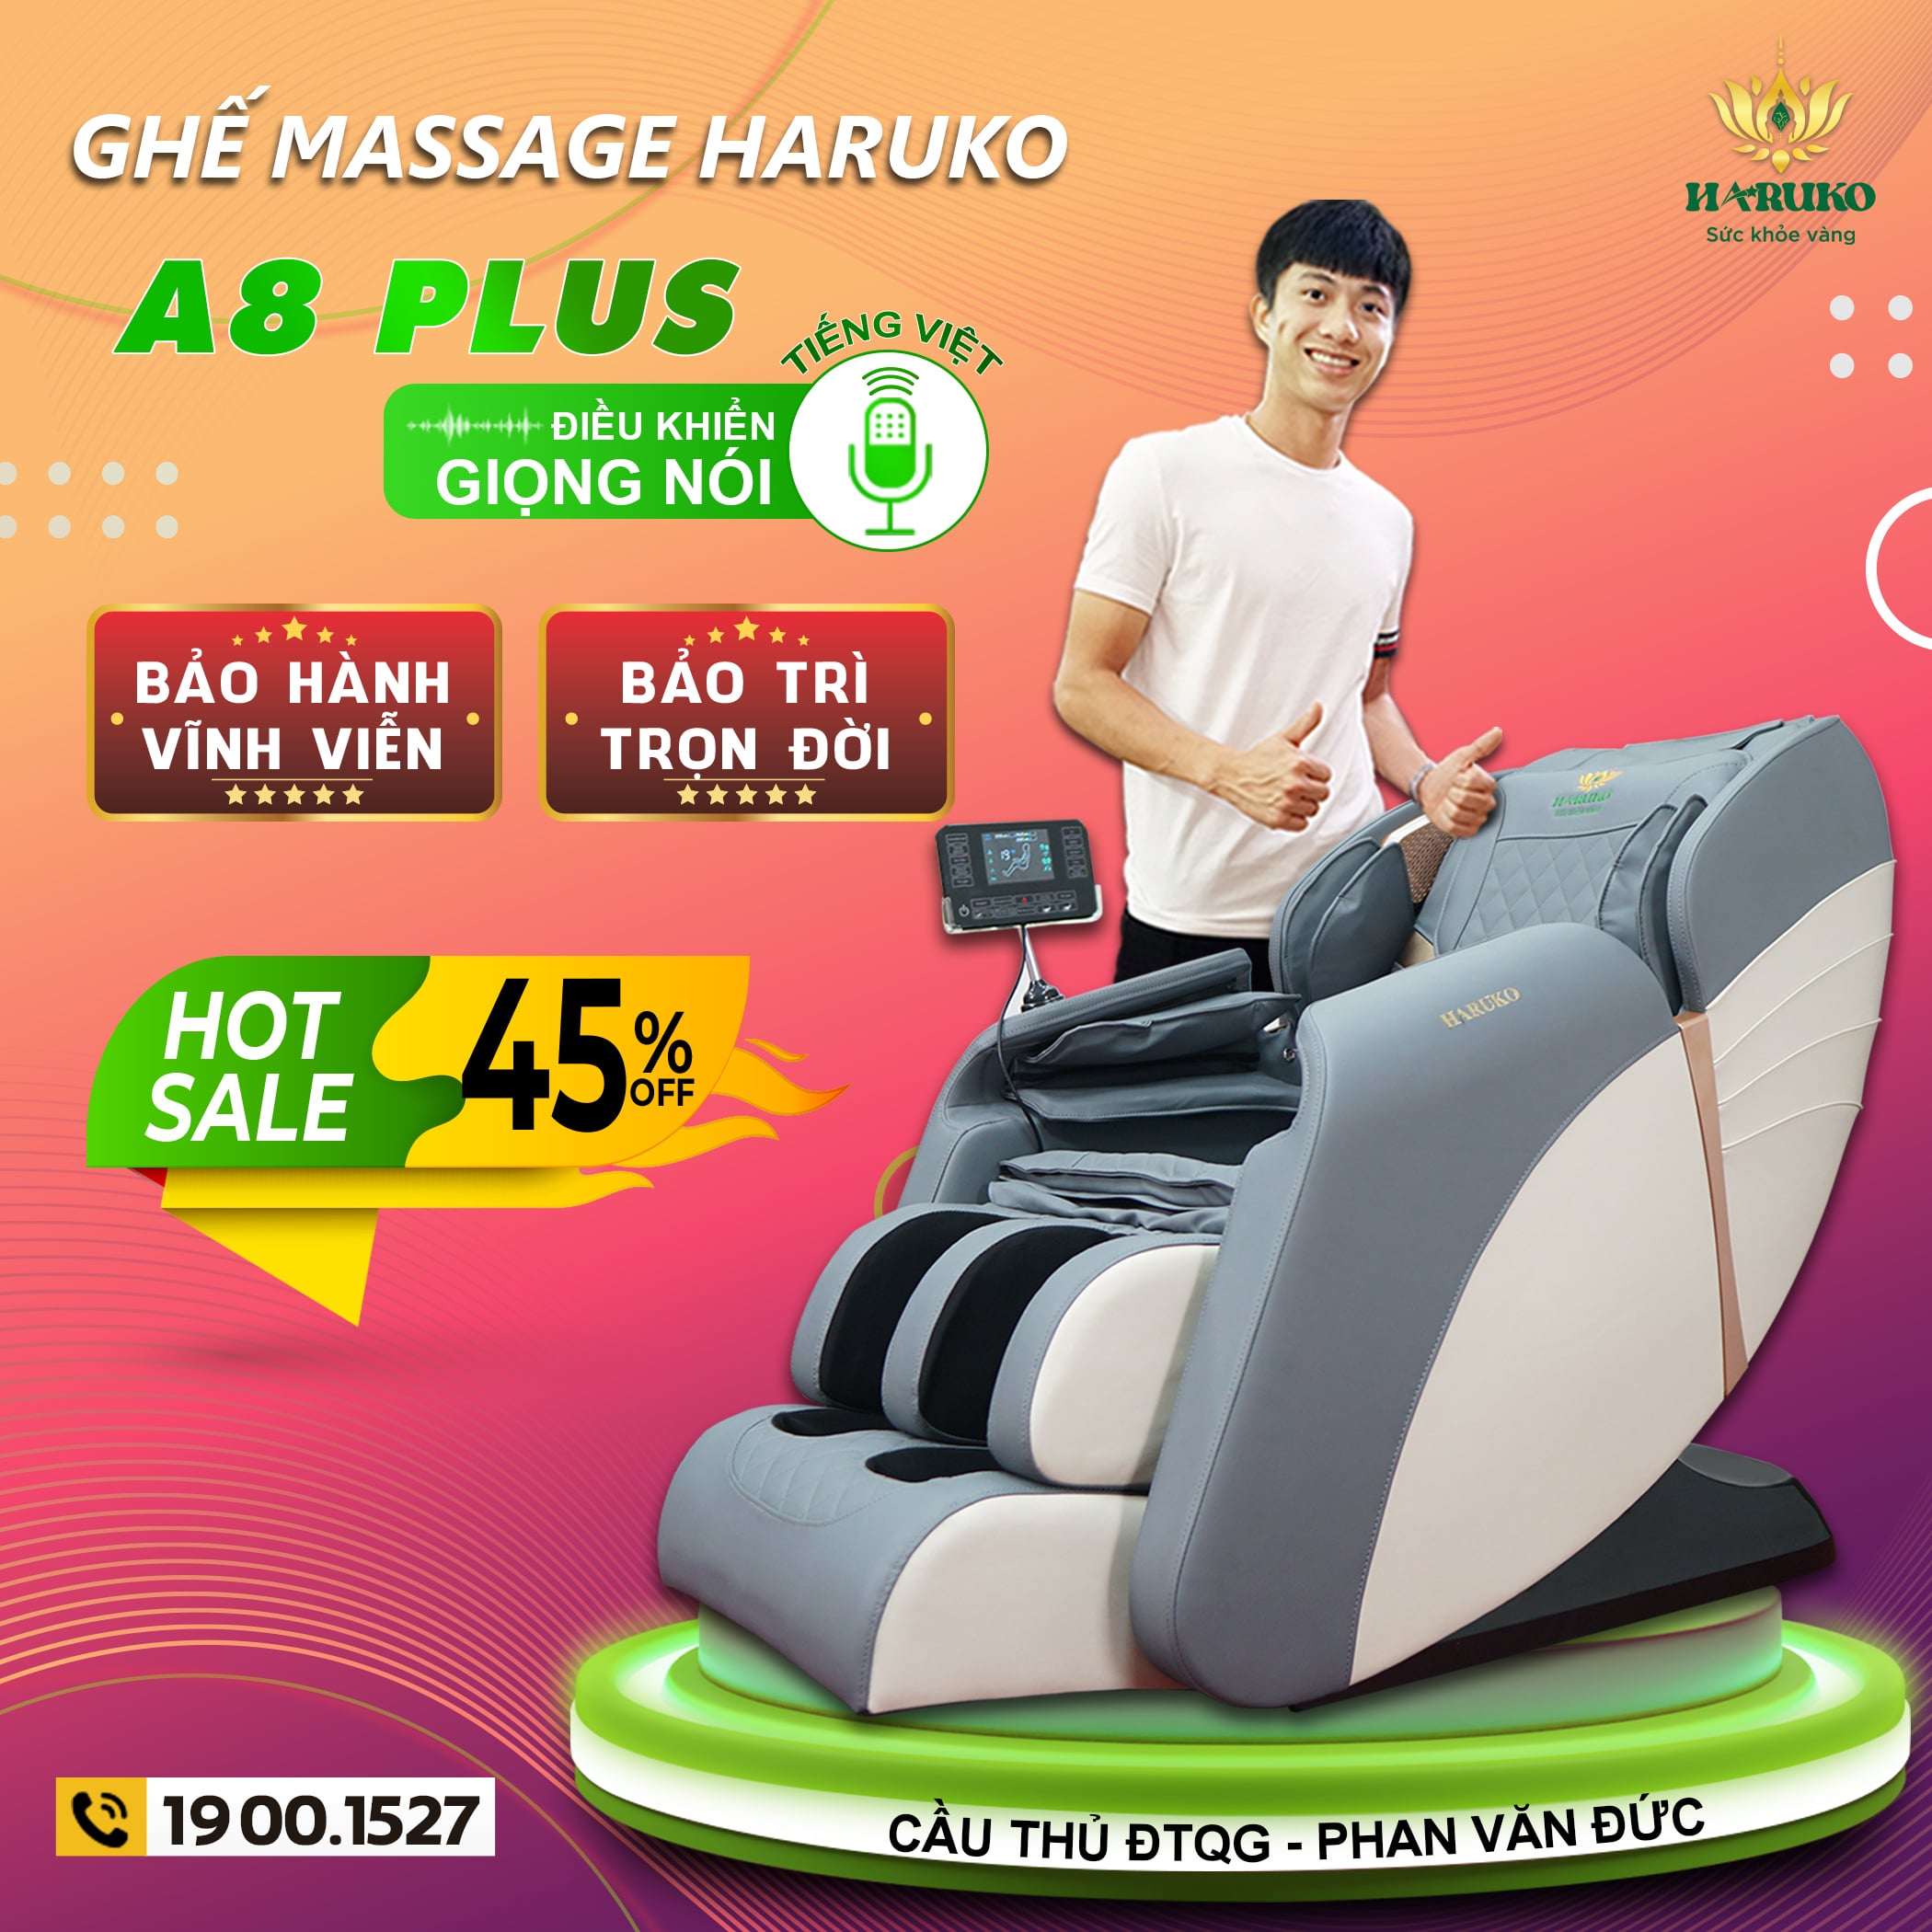 Haruko A8 Plus với nhiều tính năng hiện đại như điều khiển bằng giọng nói là lựa chọn của nhiều khách hàng